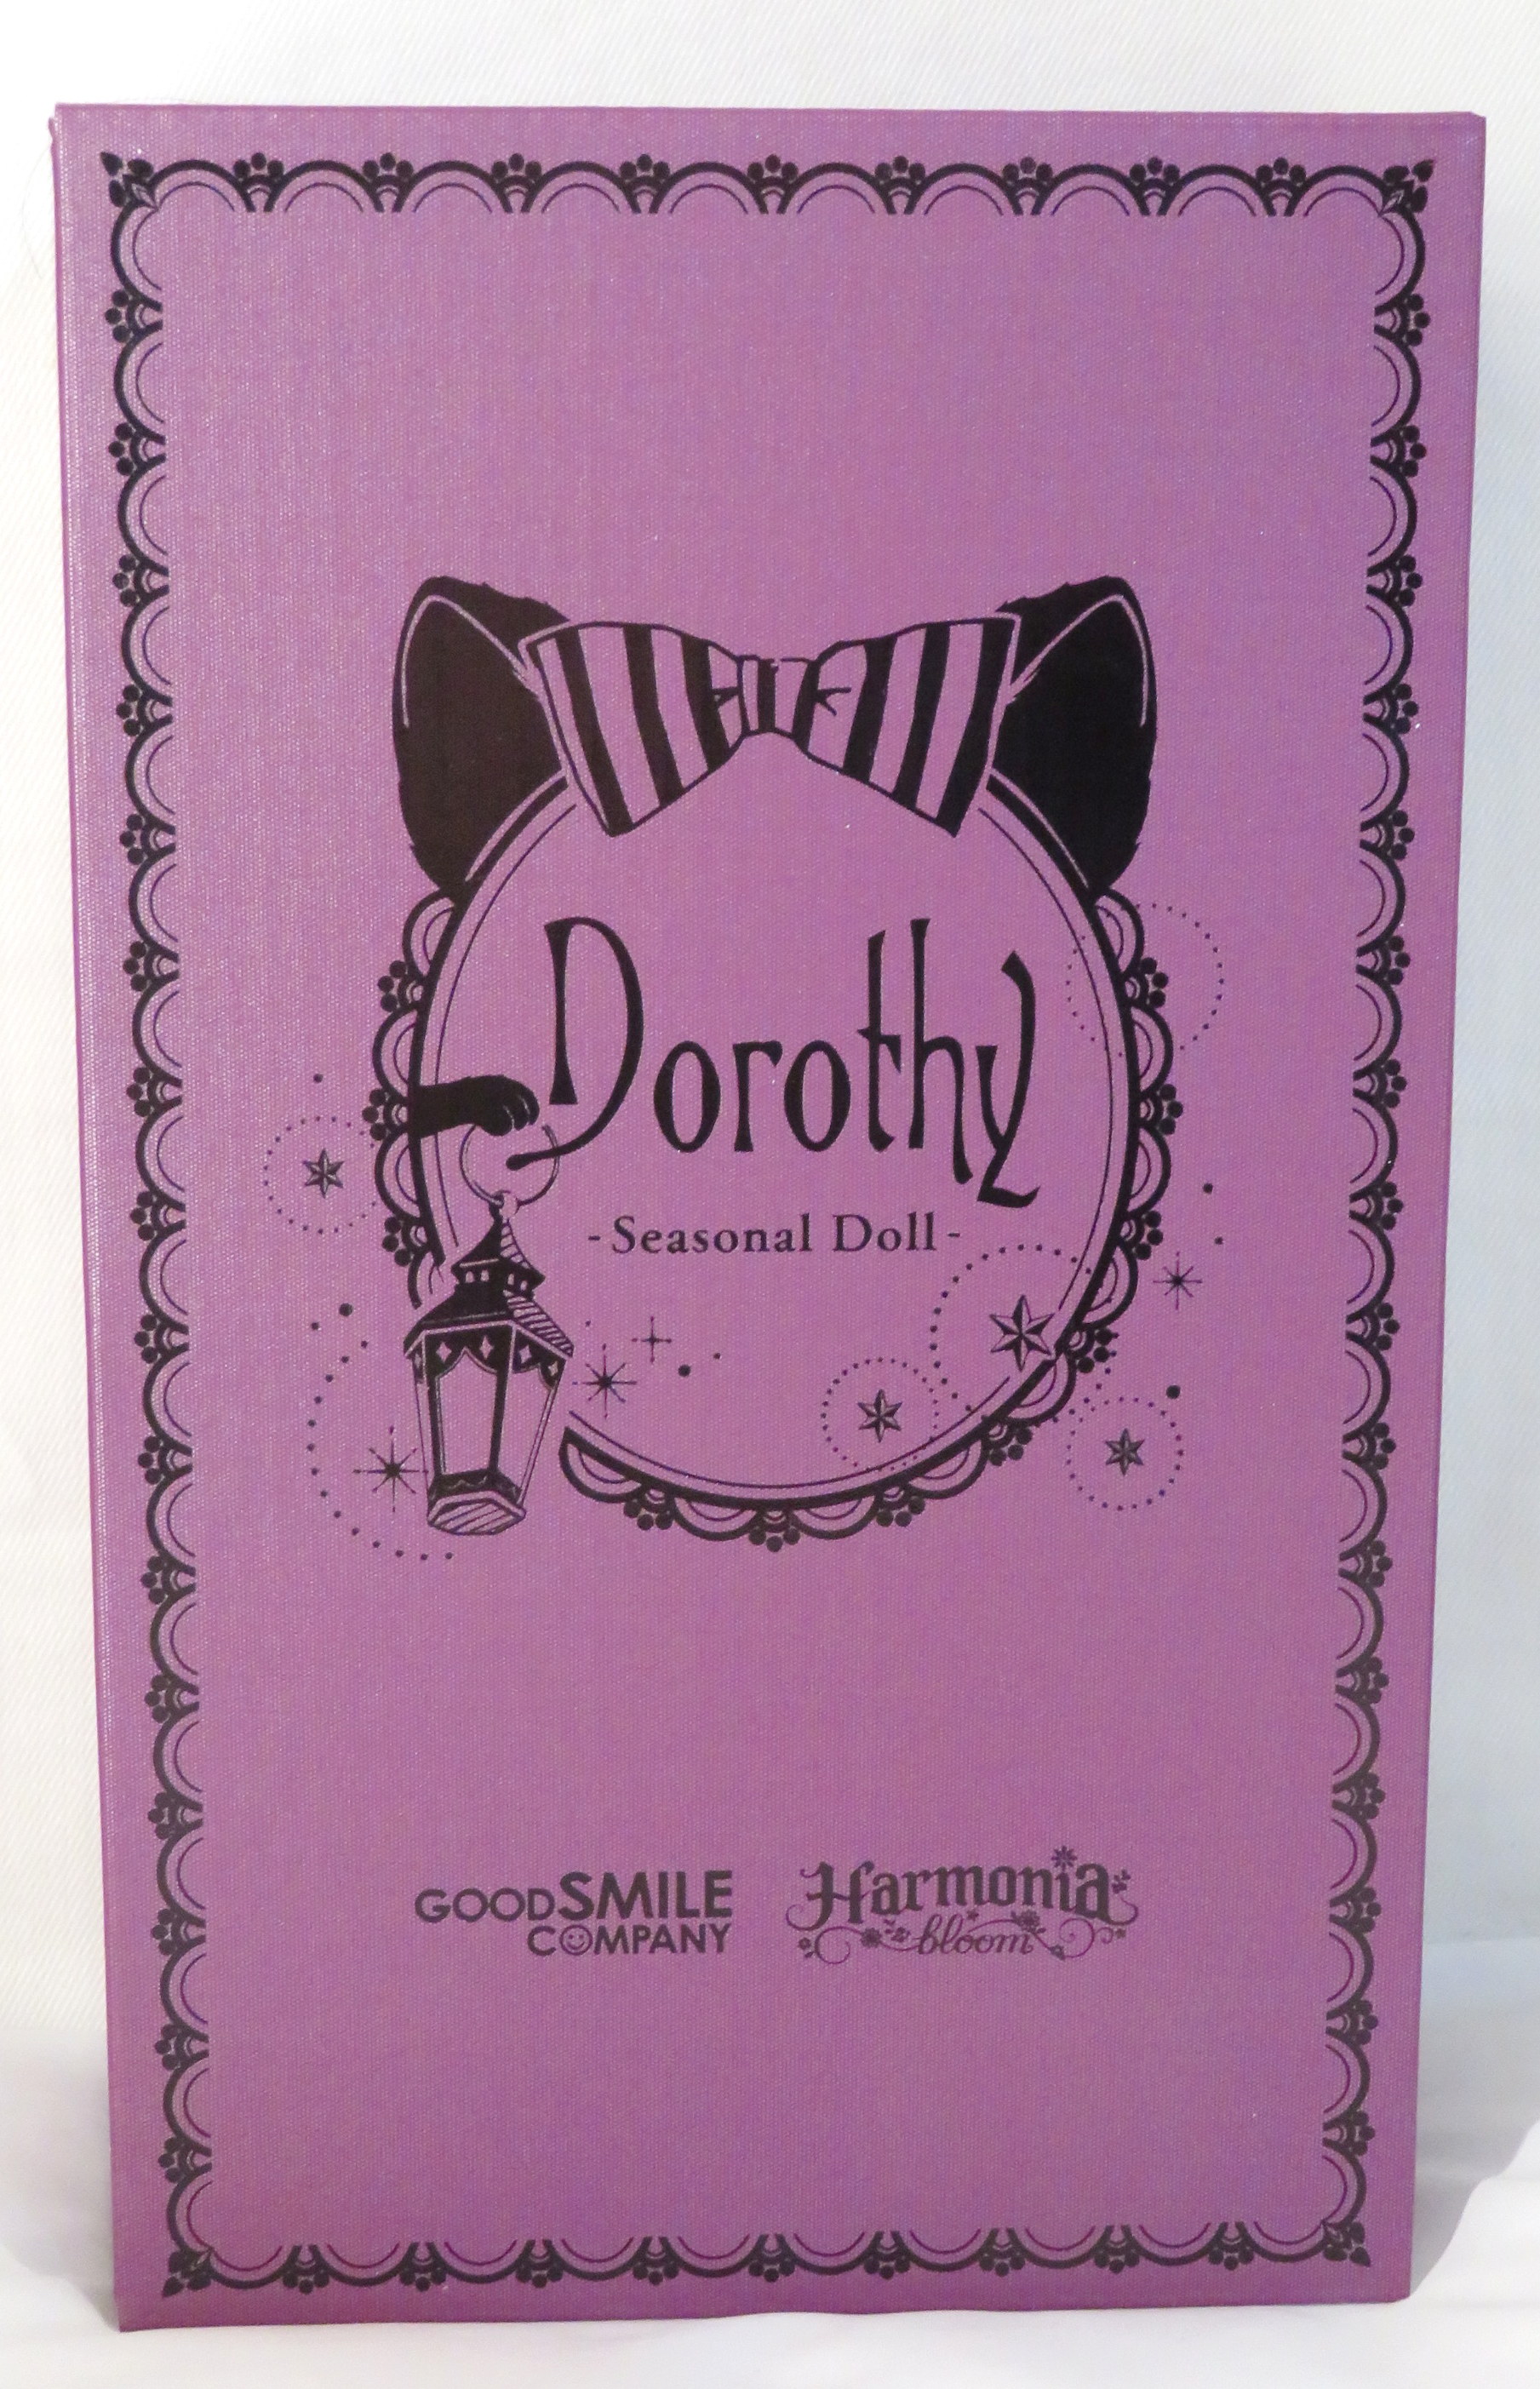 箱は細かい傷やへこみがありますHarmonia bloom Seasonal Doll Dorothy